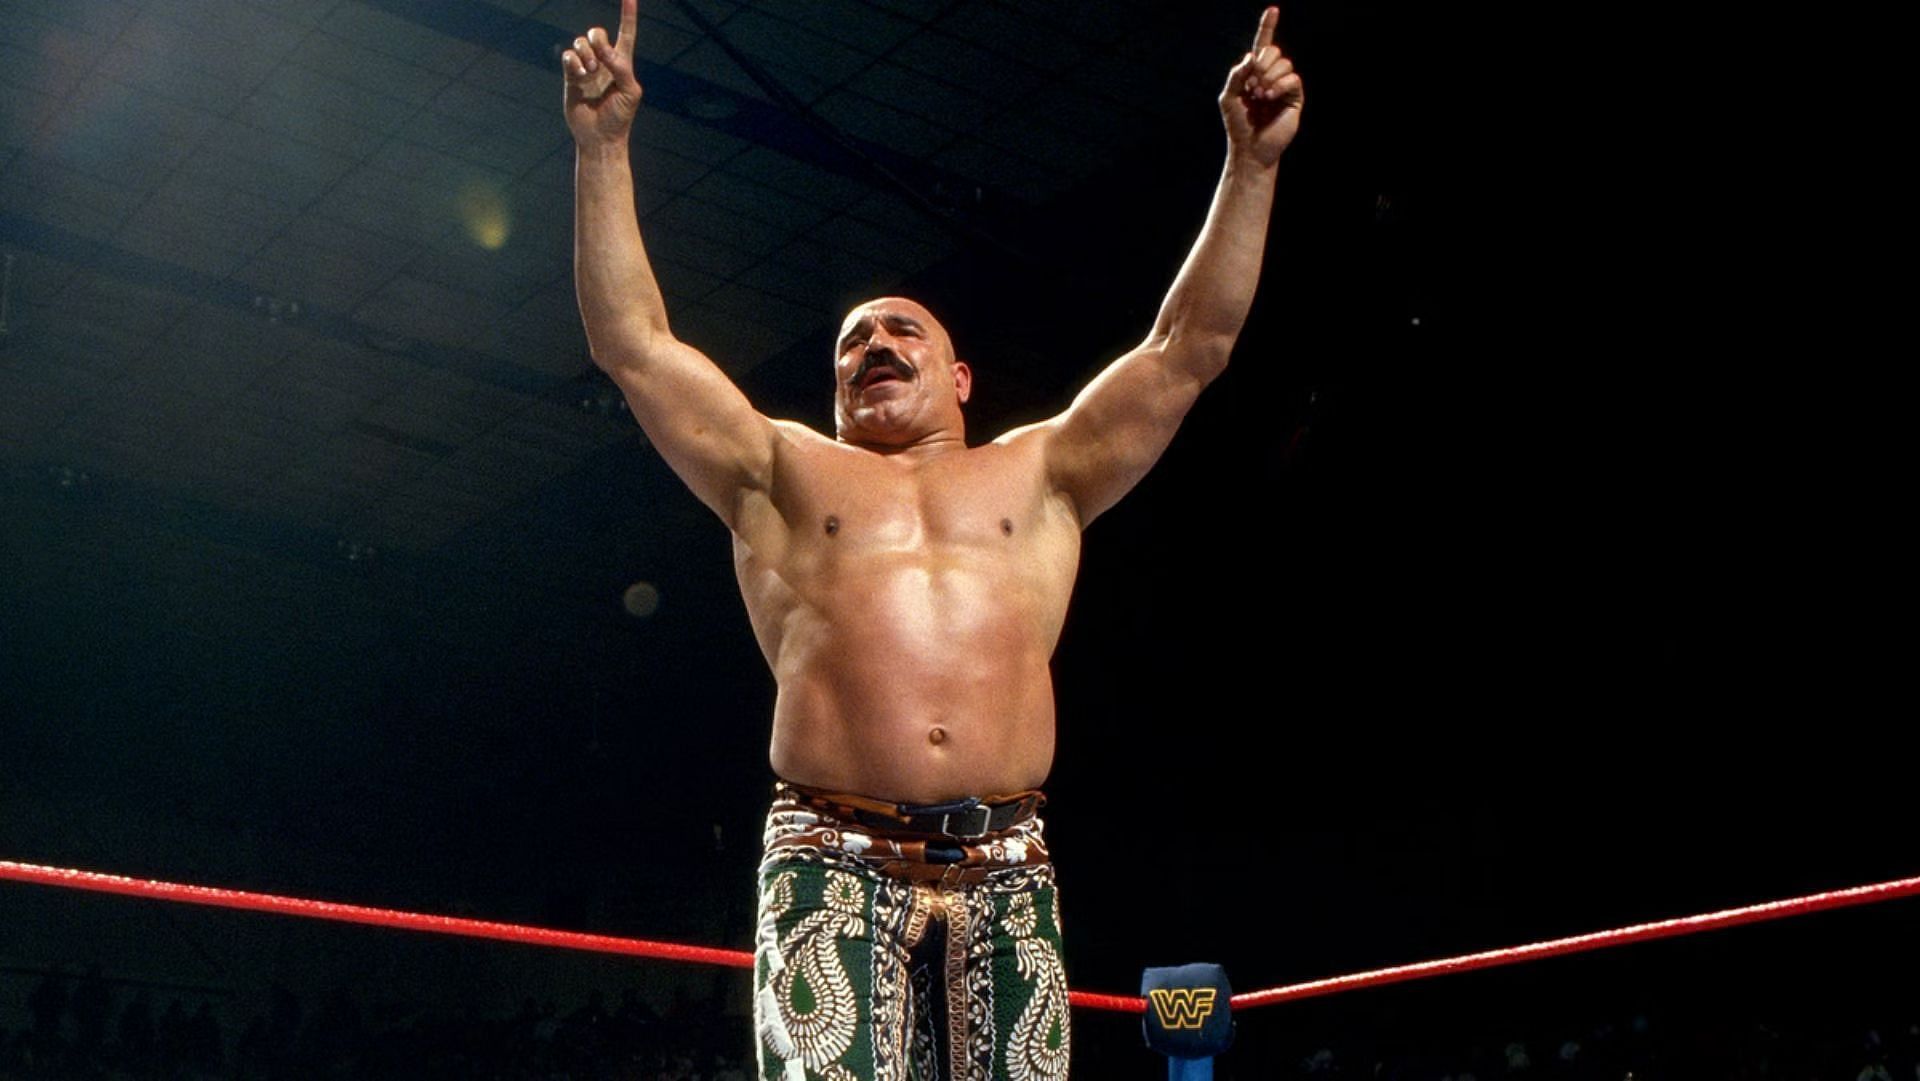 WWE Hall of Fame legend The Iron Sheik.